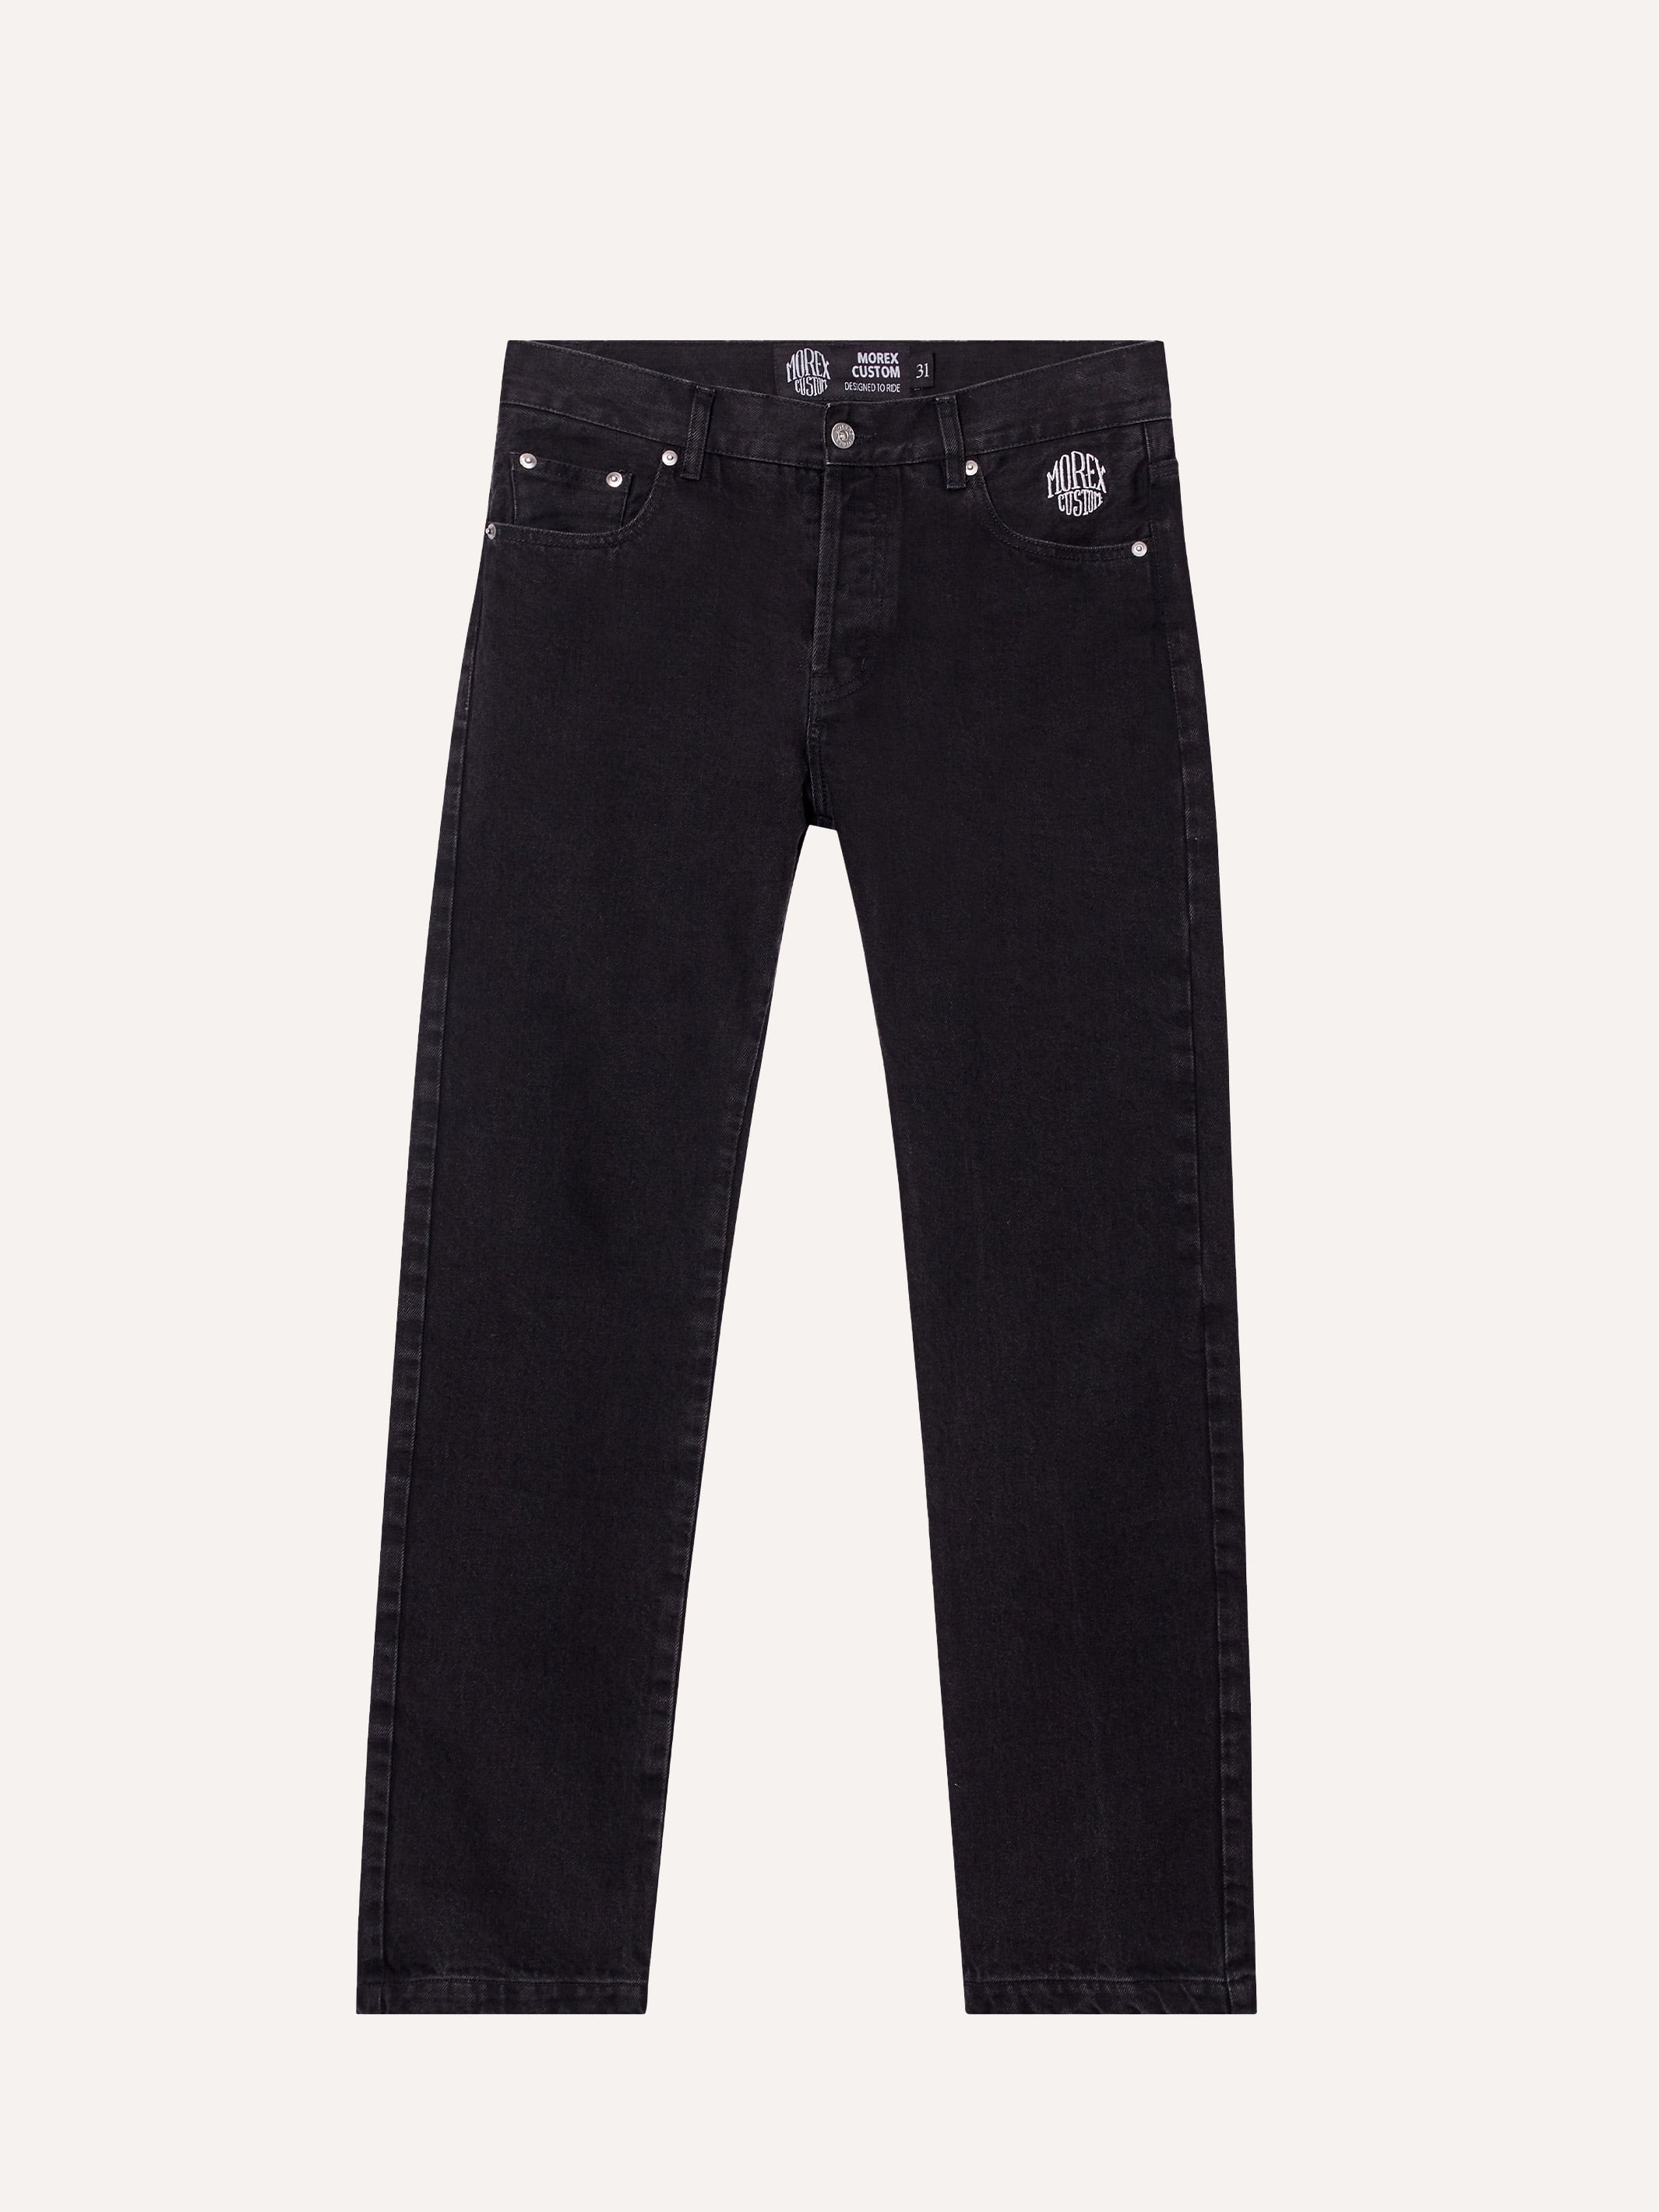 1340 - Pantalon Denim noir